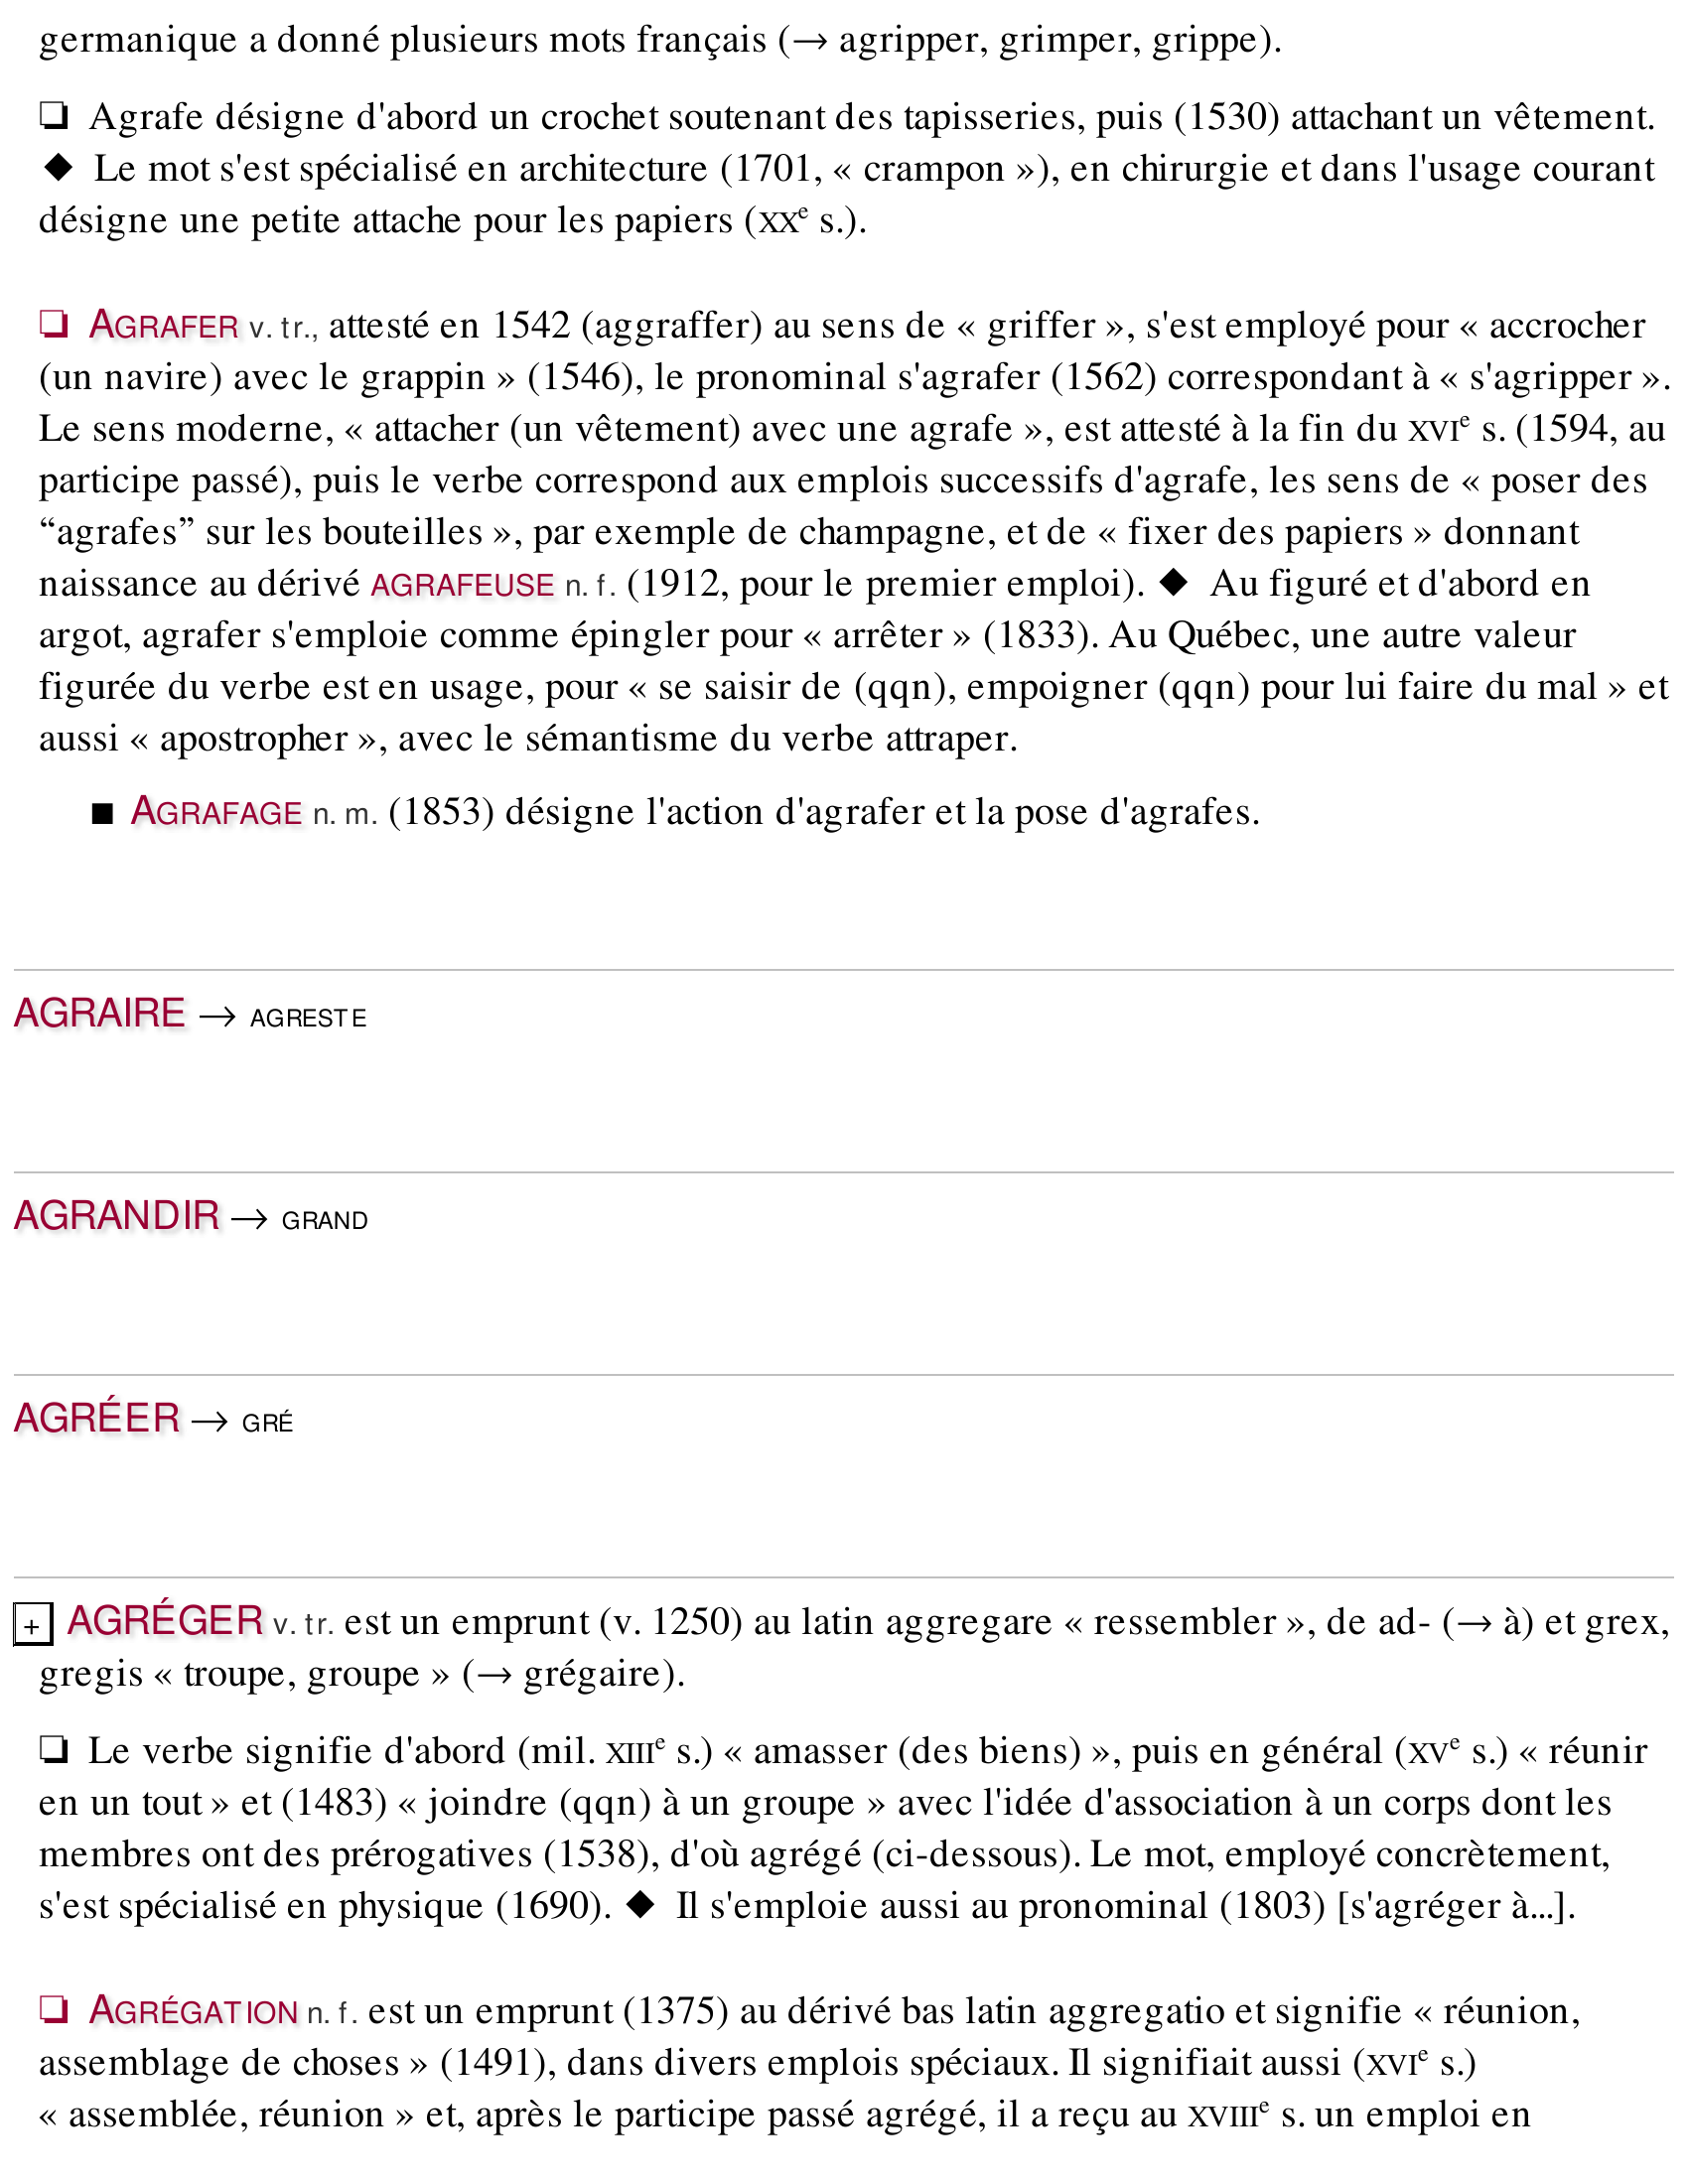 Prévisualisation du document Le sens grec reste vivant dans les emprunts didactiques au grec par le latin : AGONIST E n.